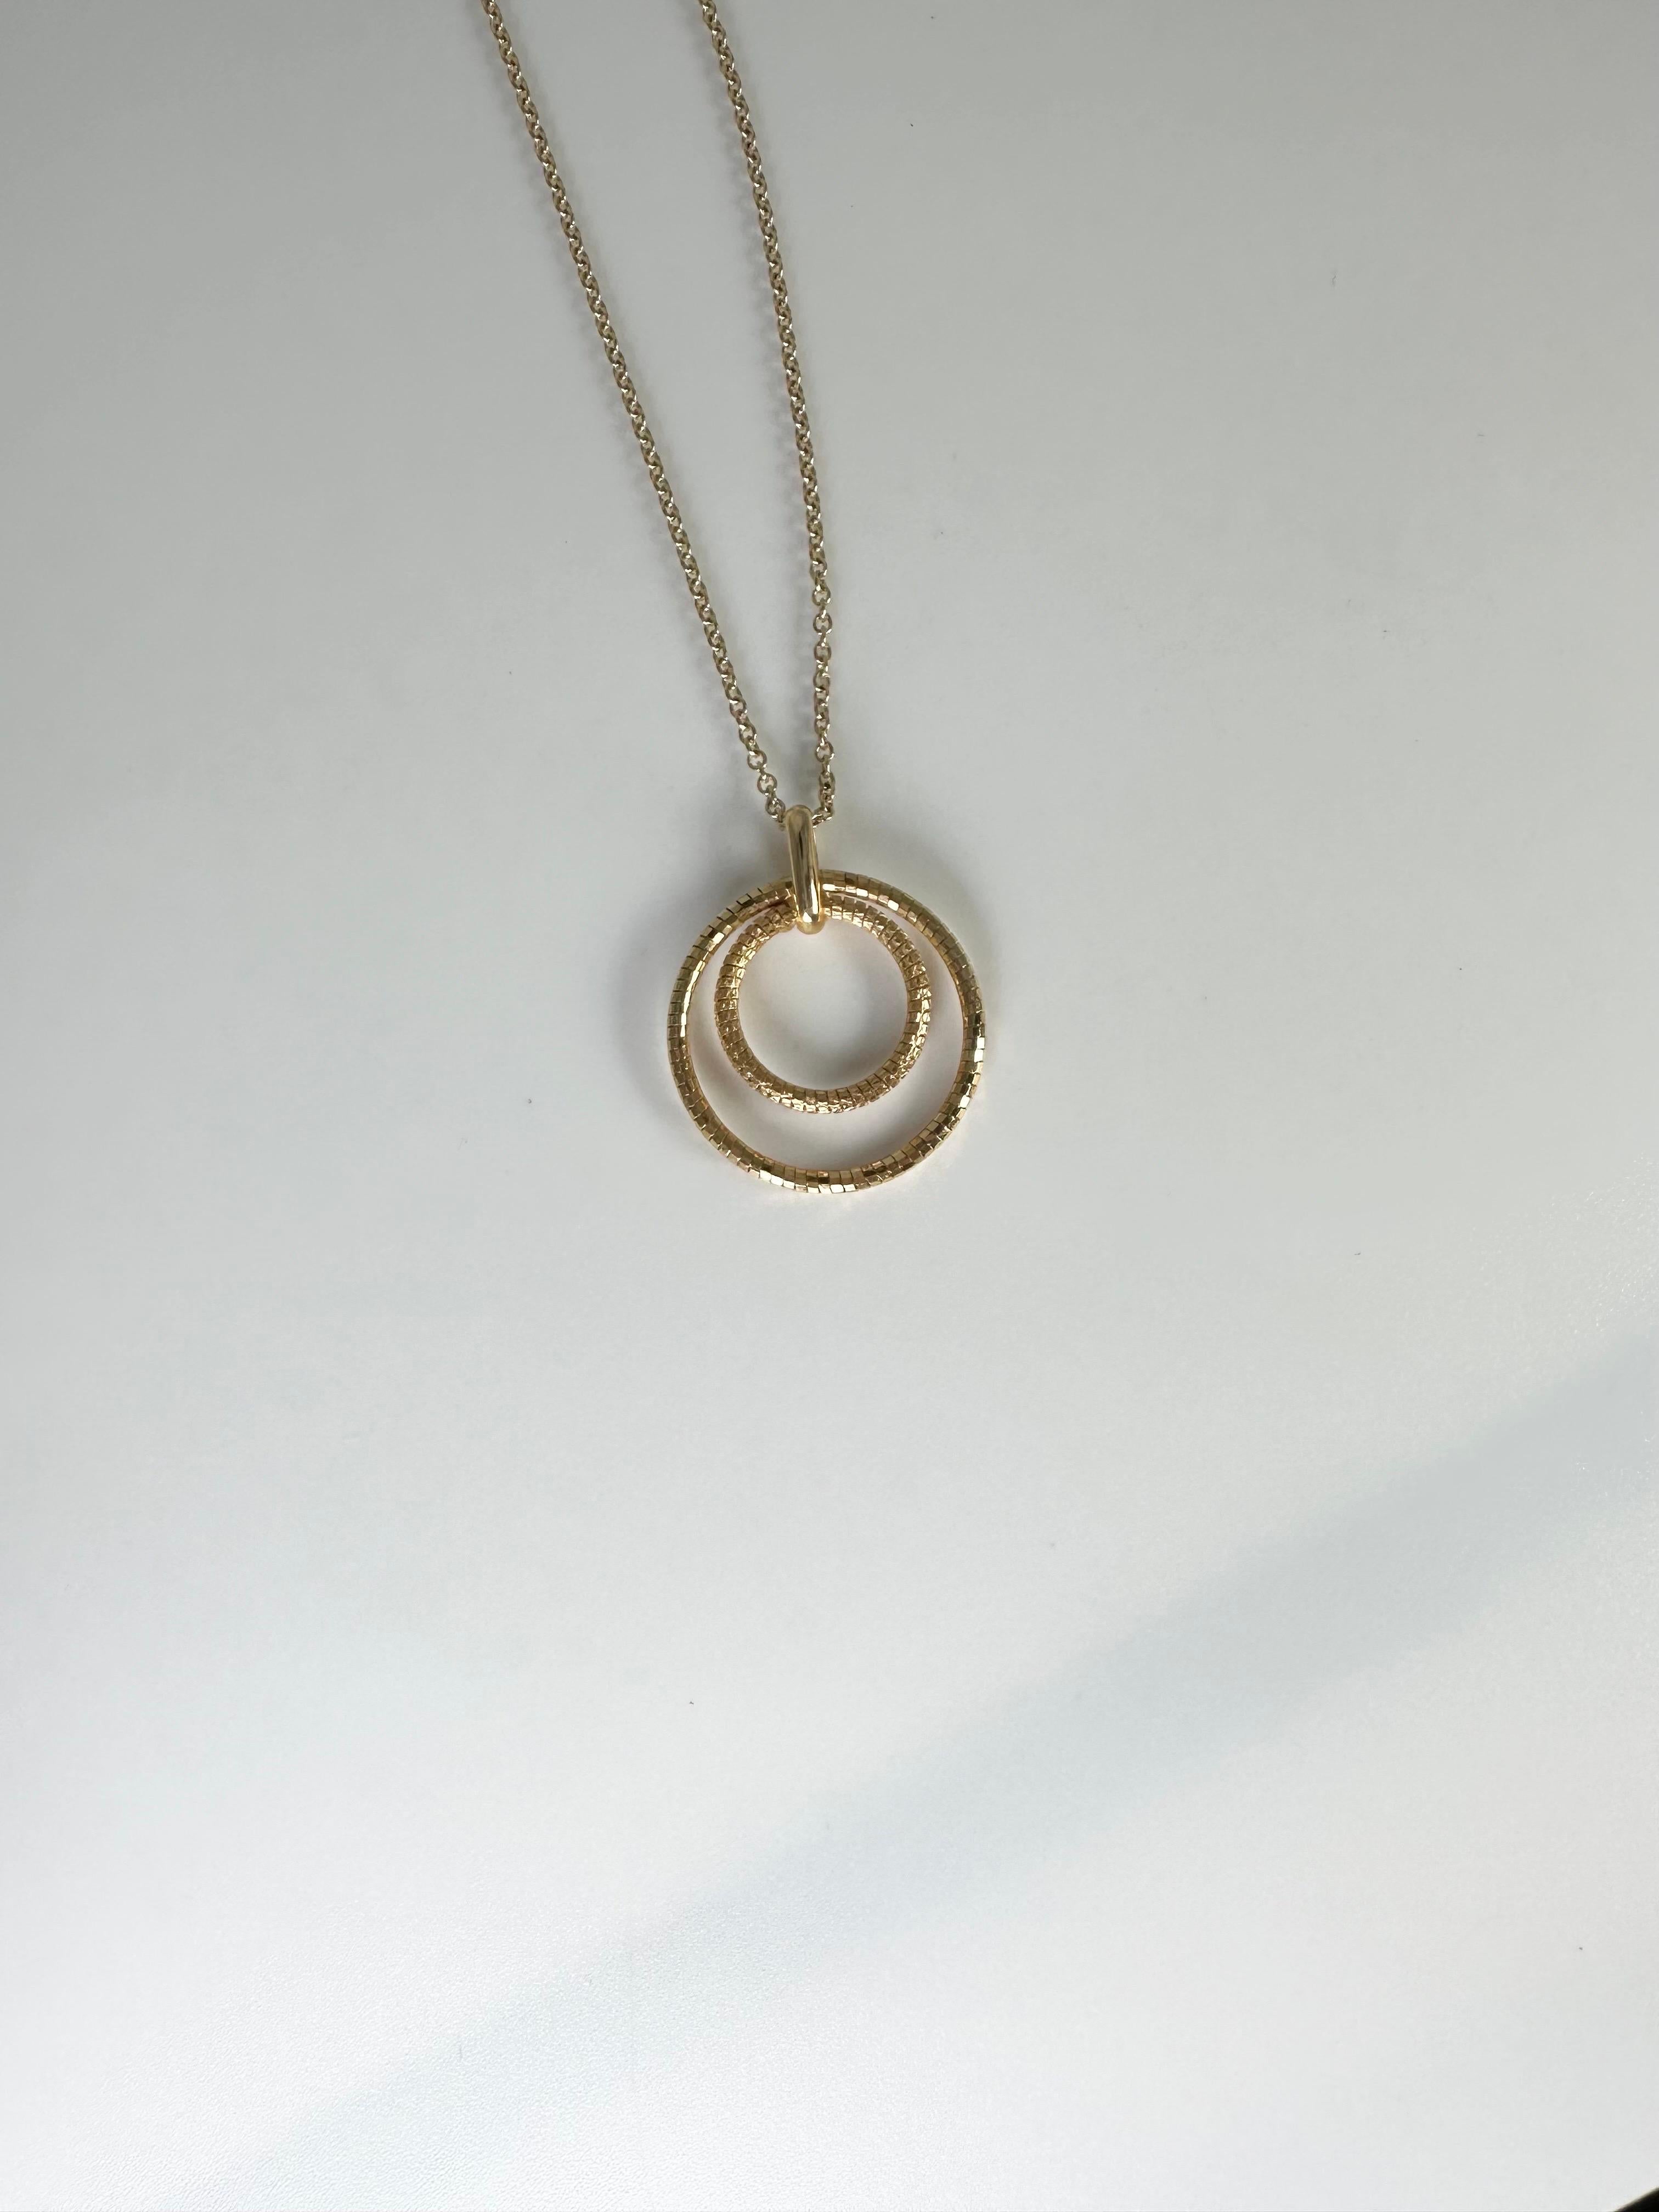 Collier moderne en or jaune 14KT, pendentif minimaliste en forme de cercle texturé sur une chaîne de 18 pouces.
OR : or 14KT
Grammes:2.10
Article# : 435-00032OF

CE QUE VOUS OBTENEZ À LA BIJOUTERIE STAMPAR :
Stampar Jewelers, situé au cœur de